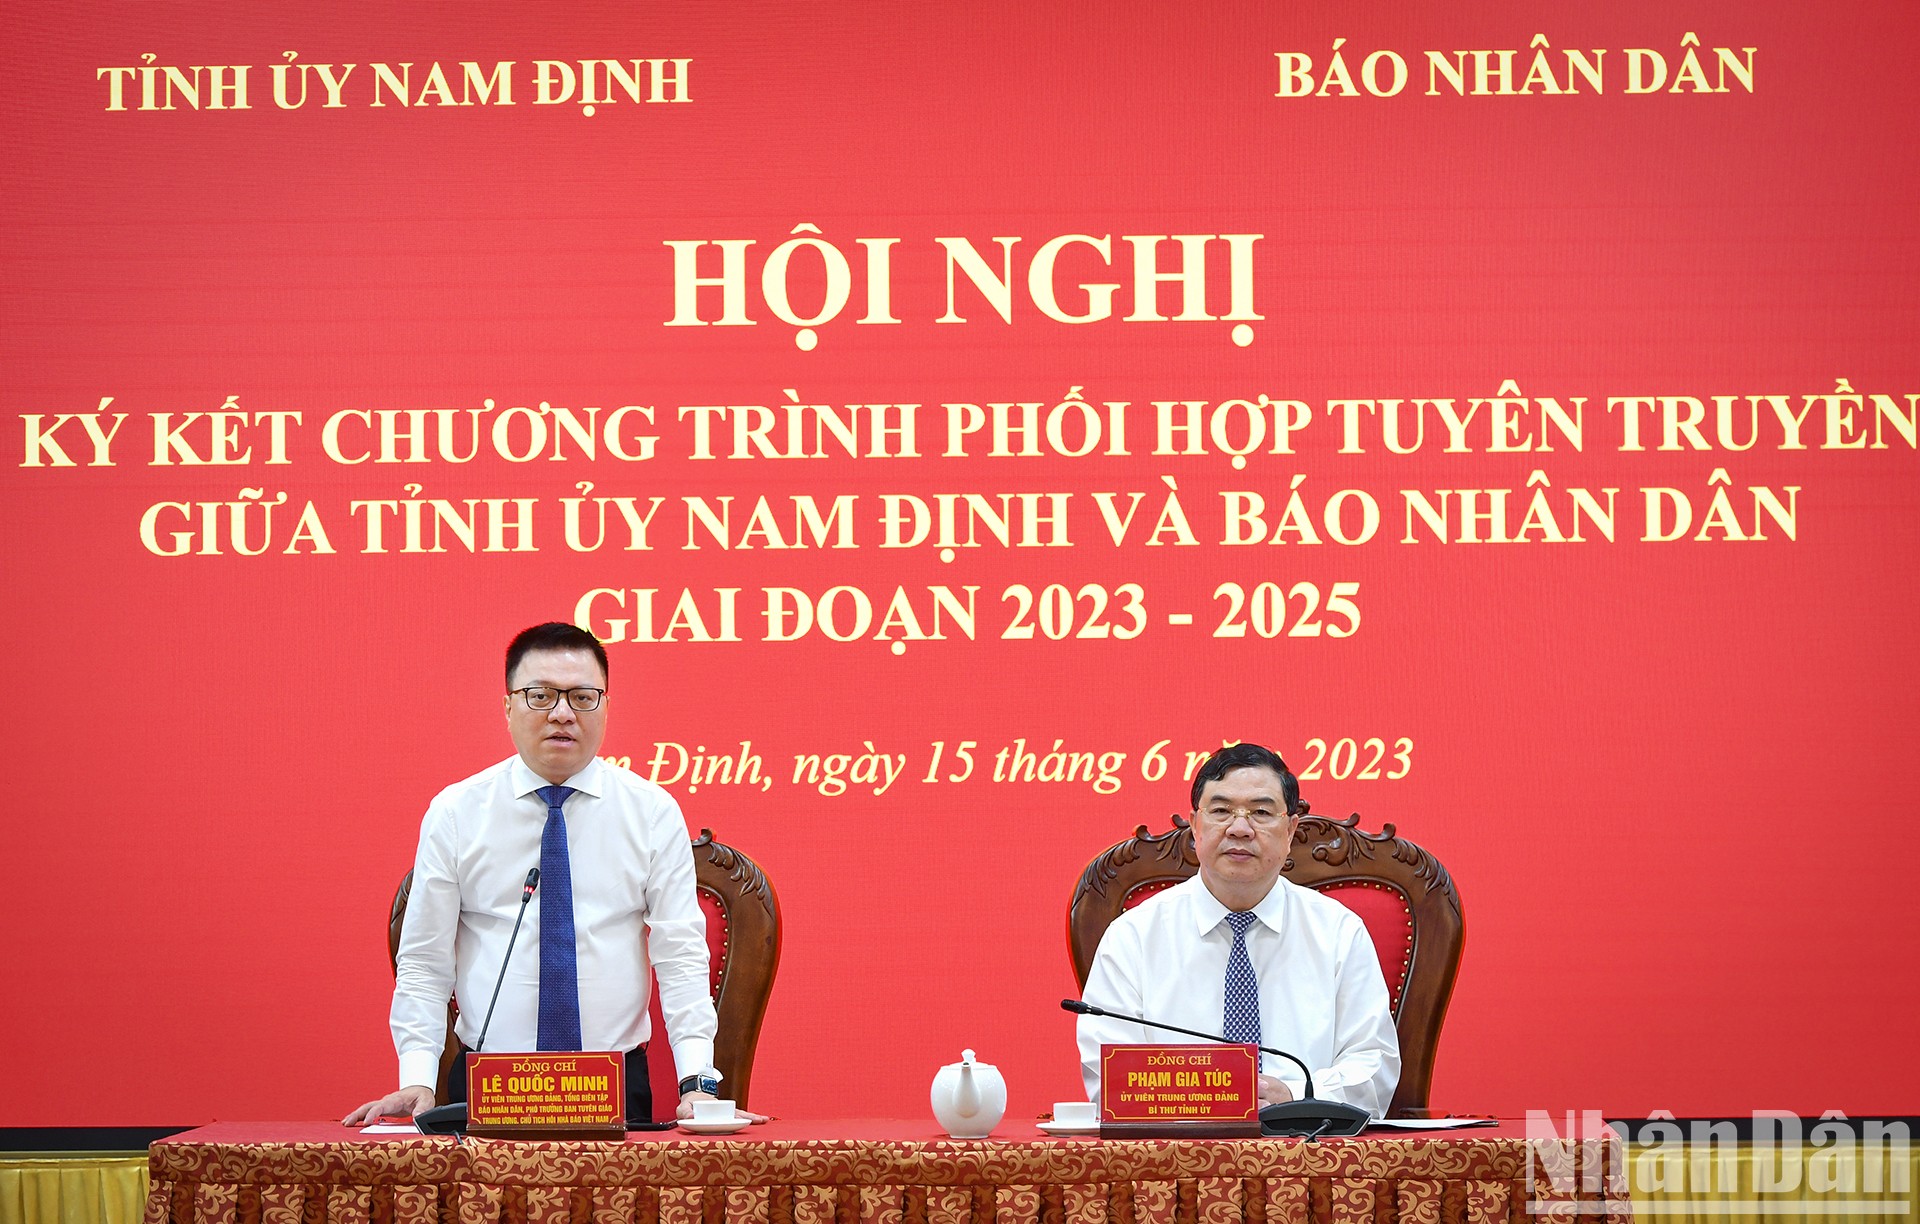 [Ảnh] Báo Nhân Dân và tỉnh Nam Định ký kết Chương trình phối hợp tuyên truyền giai đoạn 2023-2025